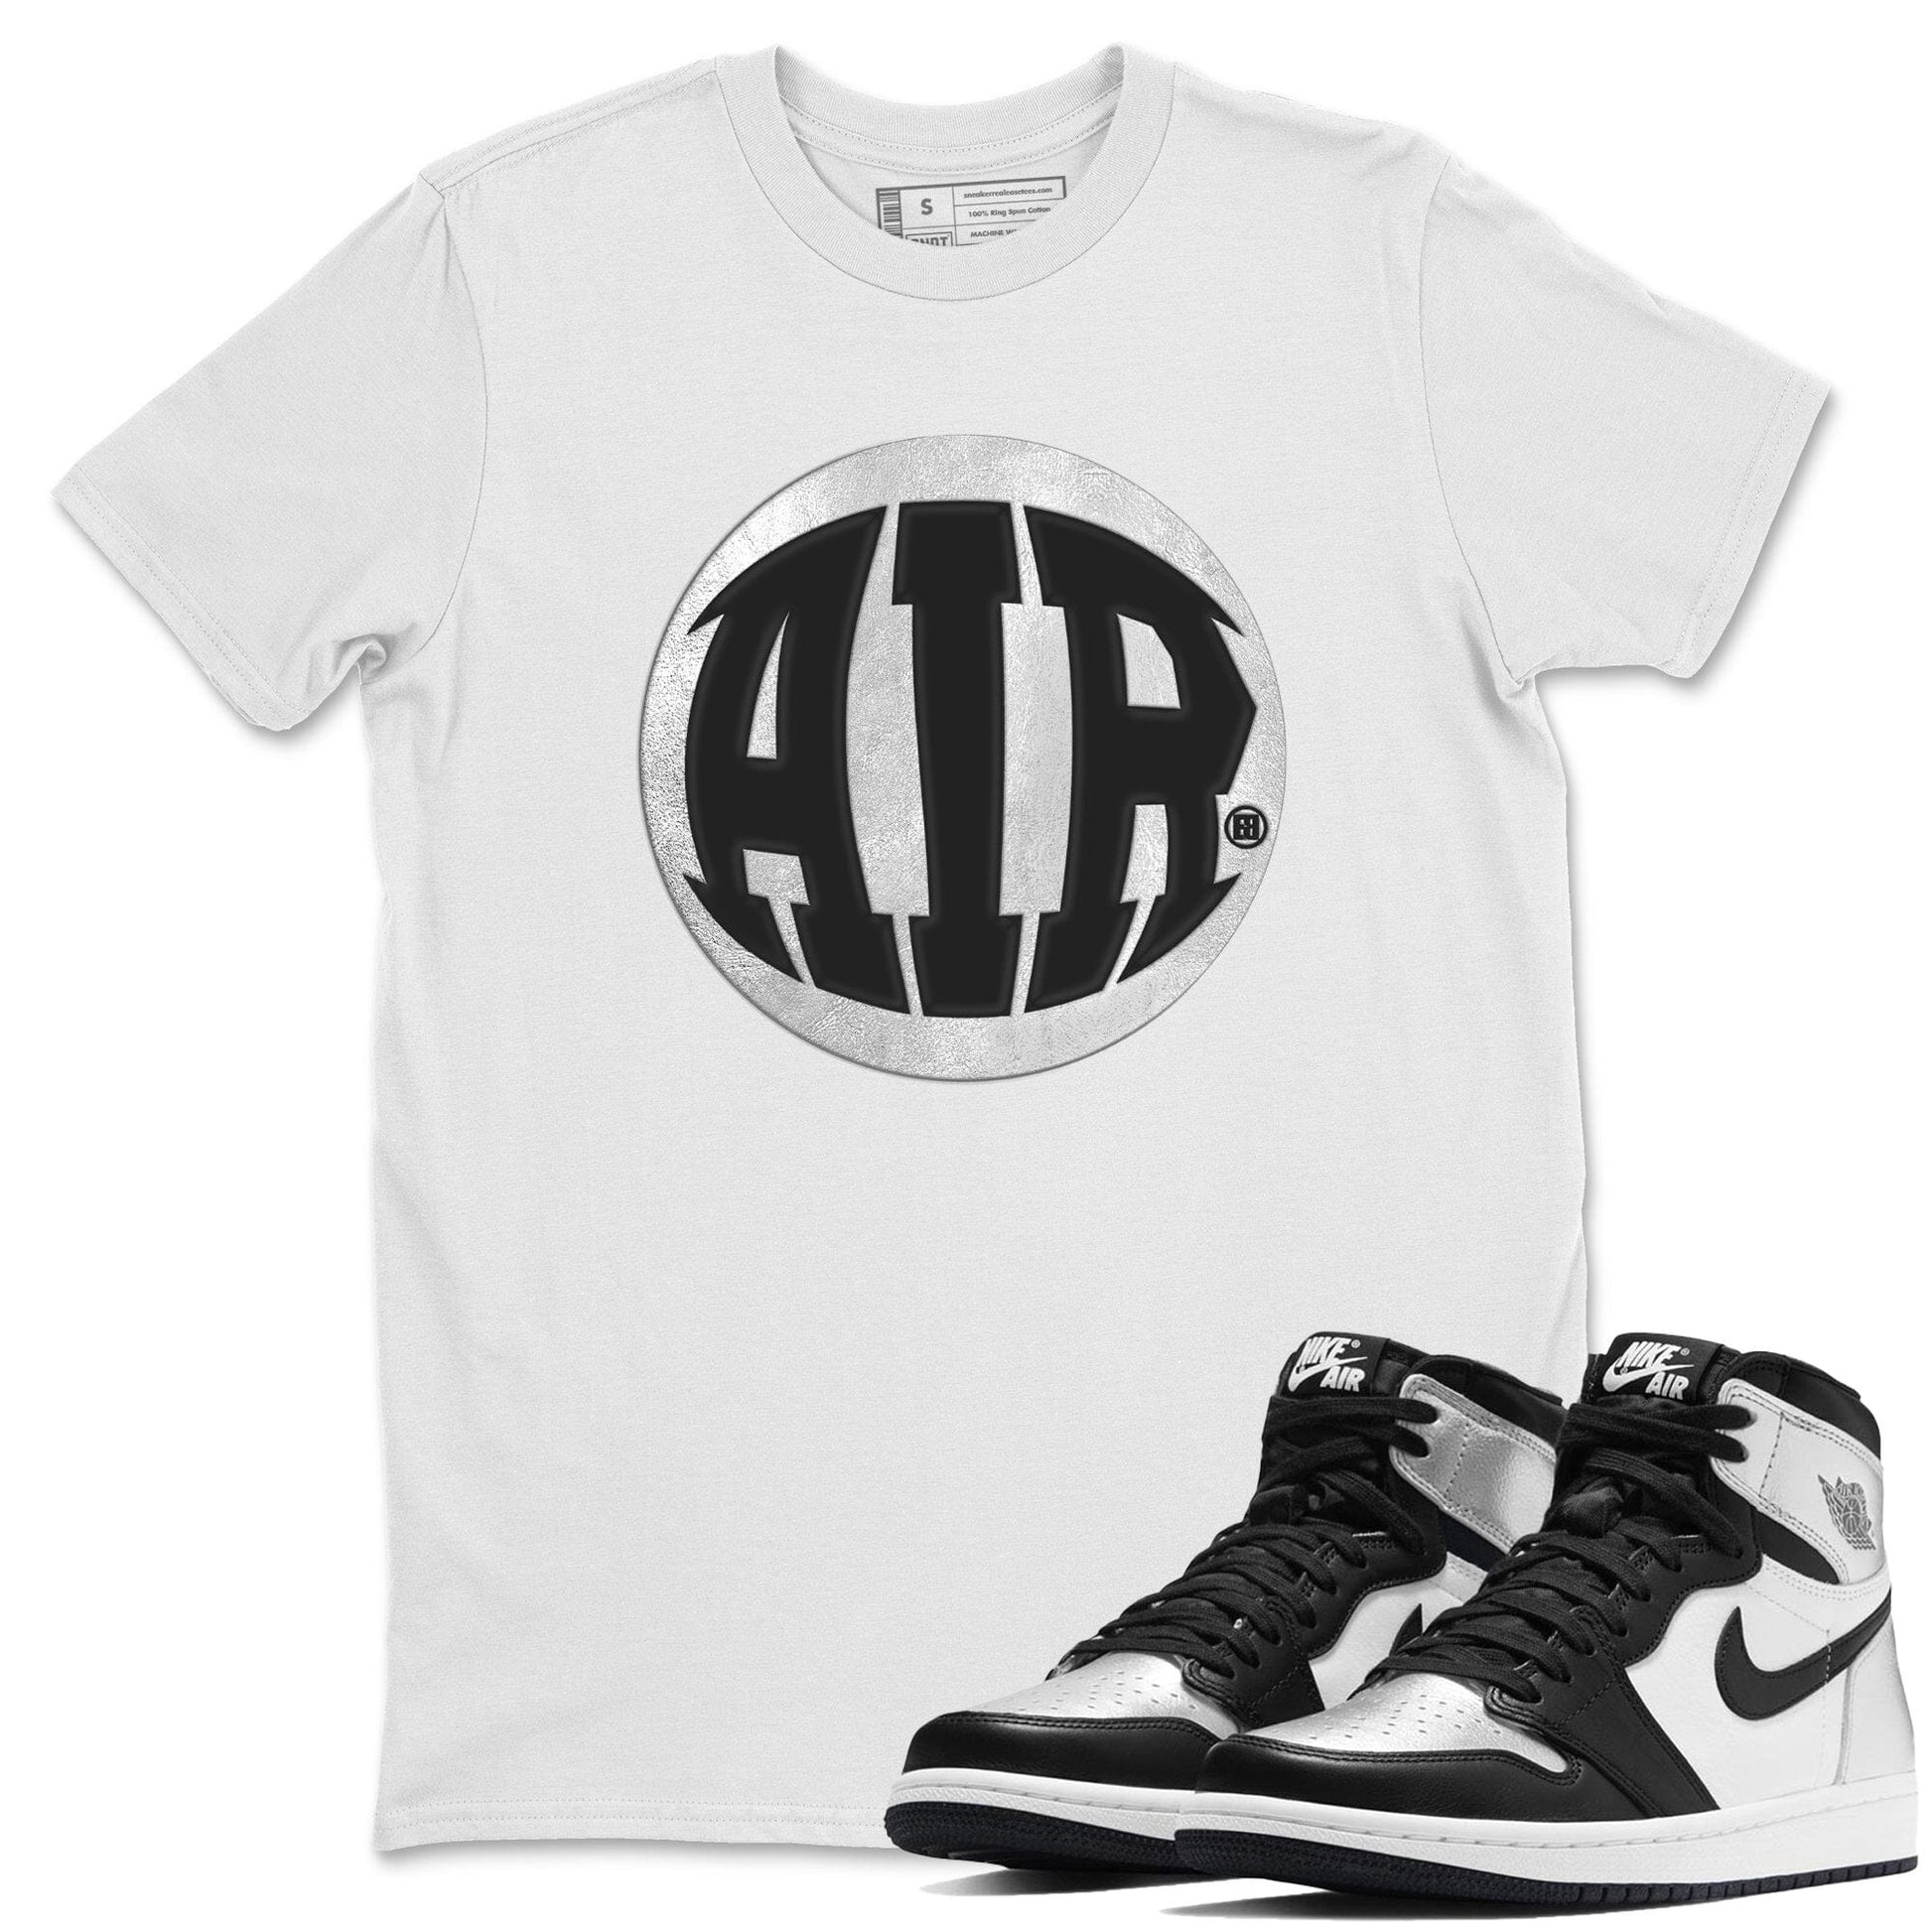 Jordan 1 Silver Toe Sneaker Match Tees Air Sneaker Tees Jordan 1 Silver Toe Sneaker Release Tees Unisex Shirts